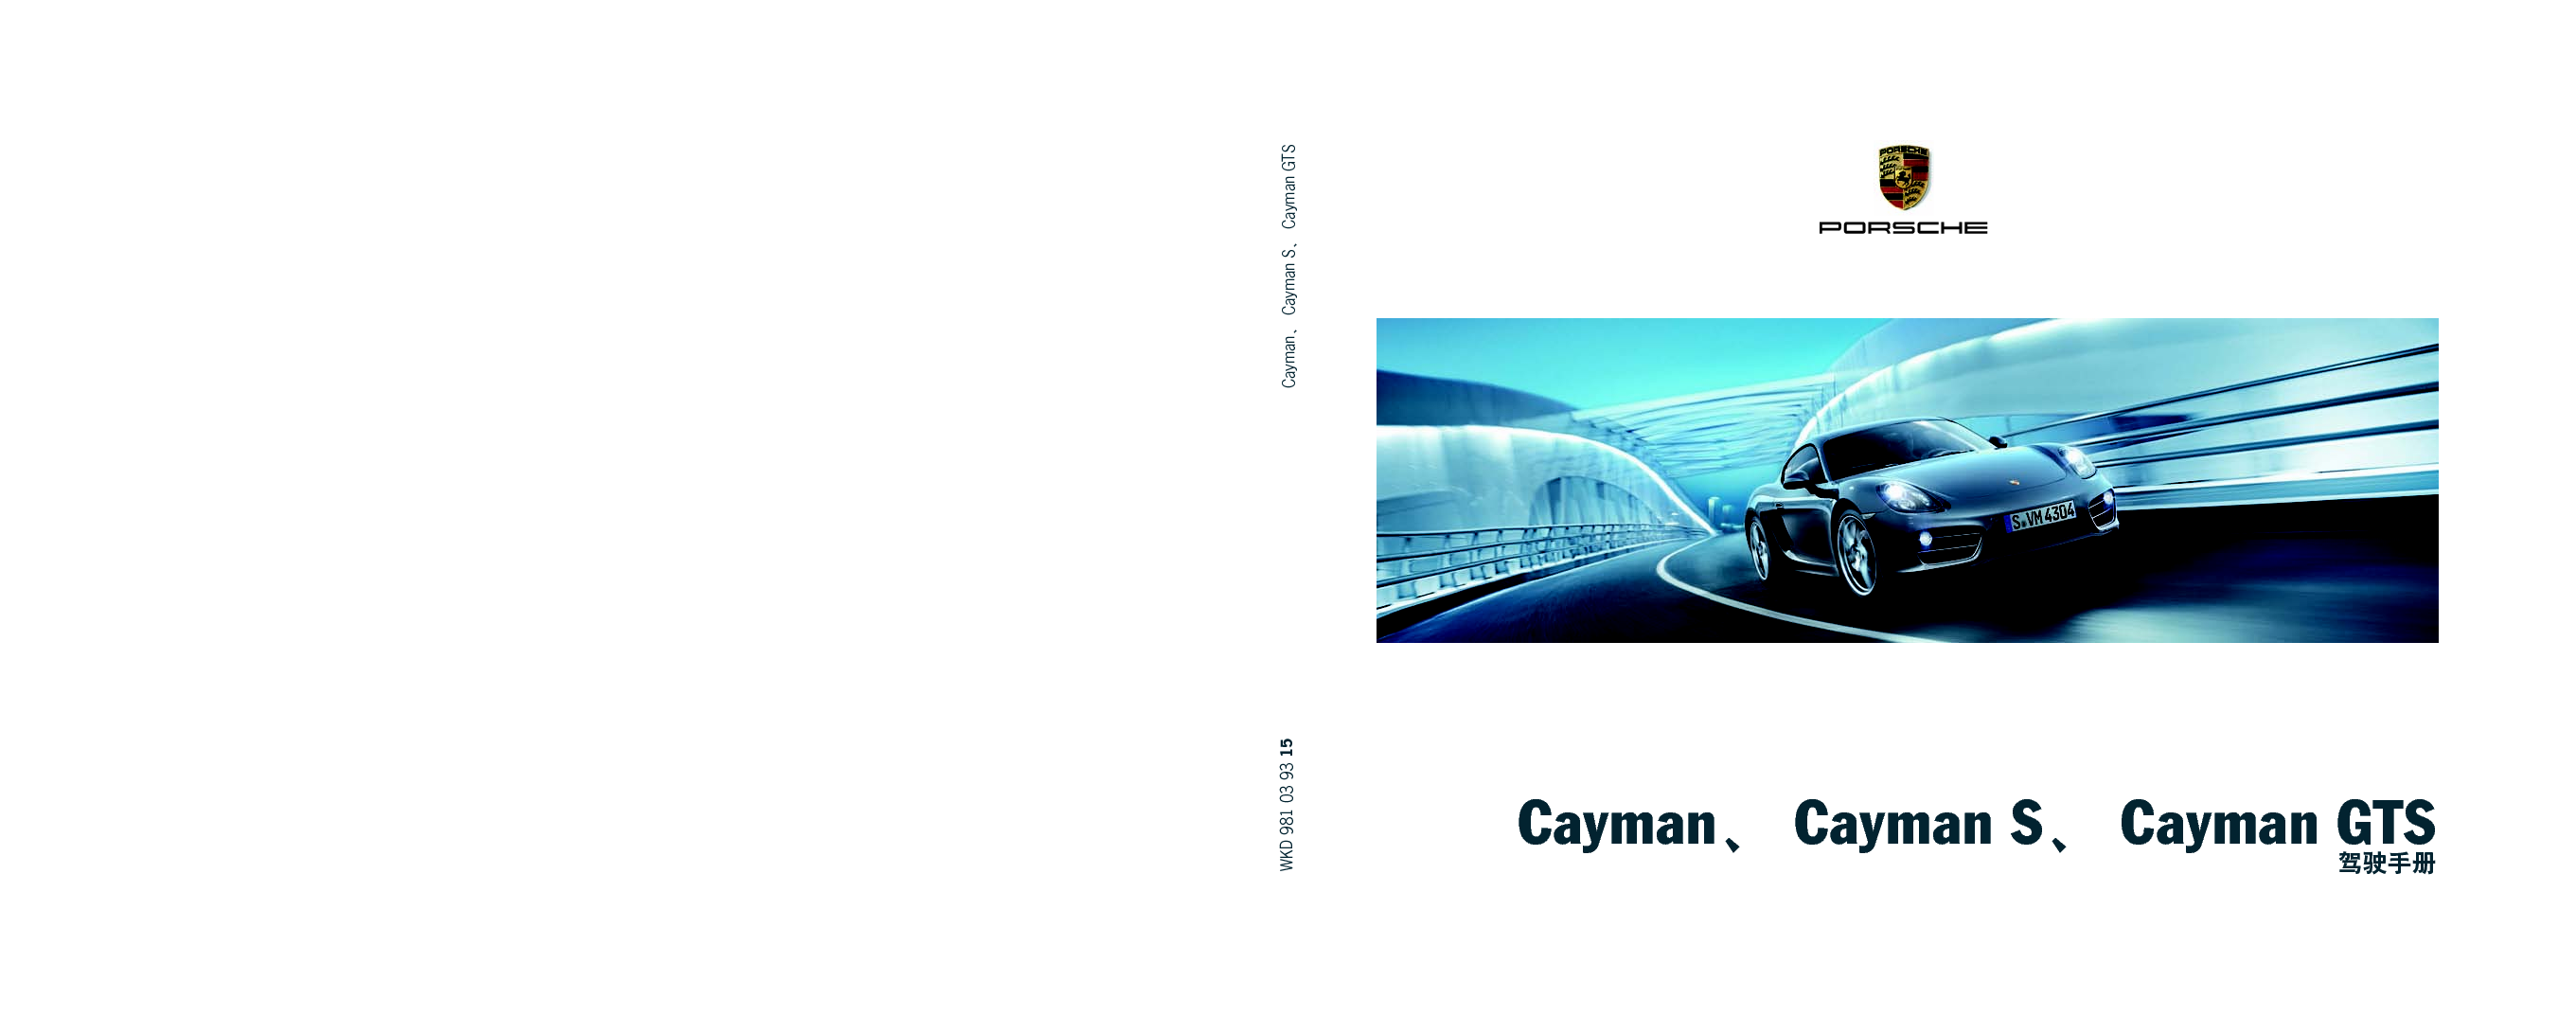 保时捷 Porsche Cayman 08/2014 使用说明书 封面